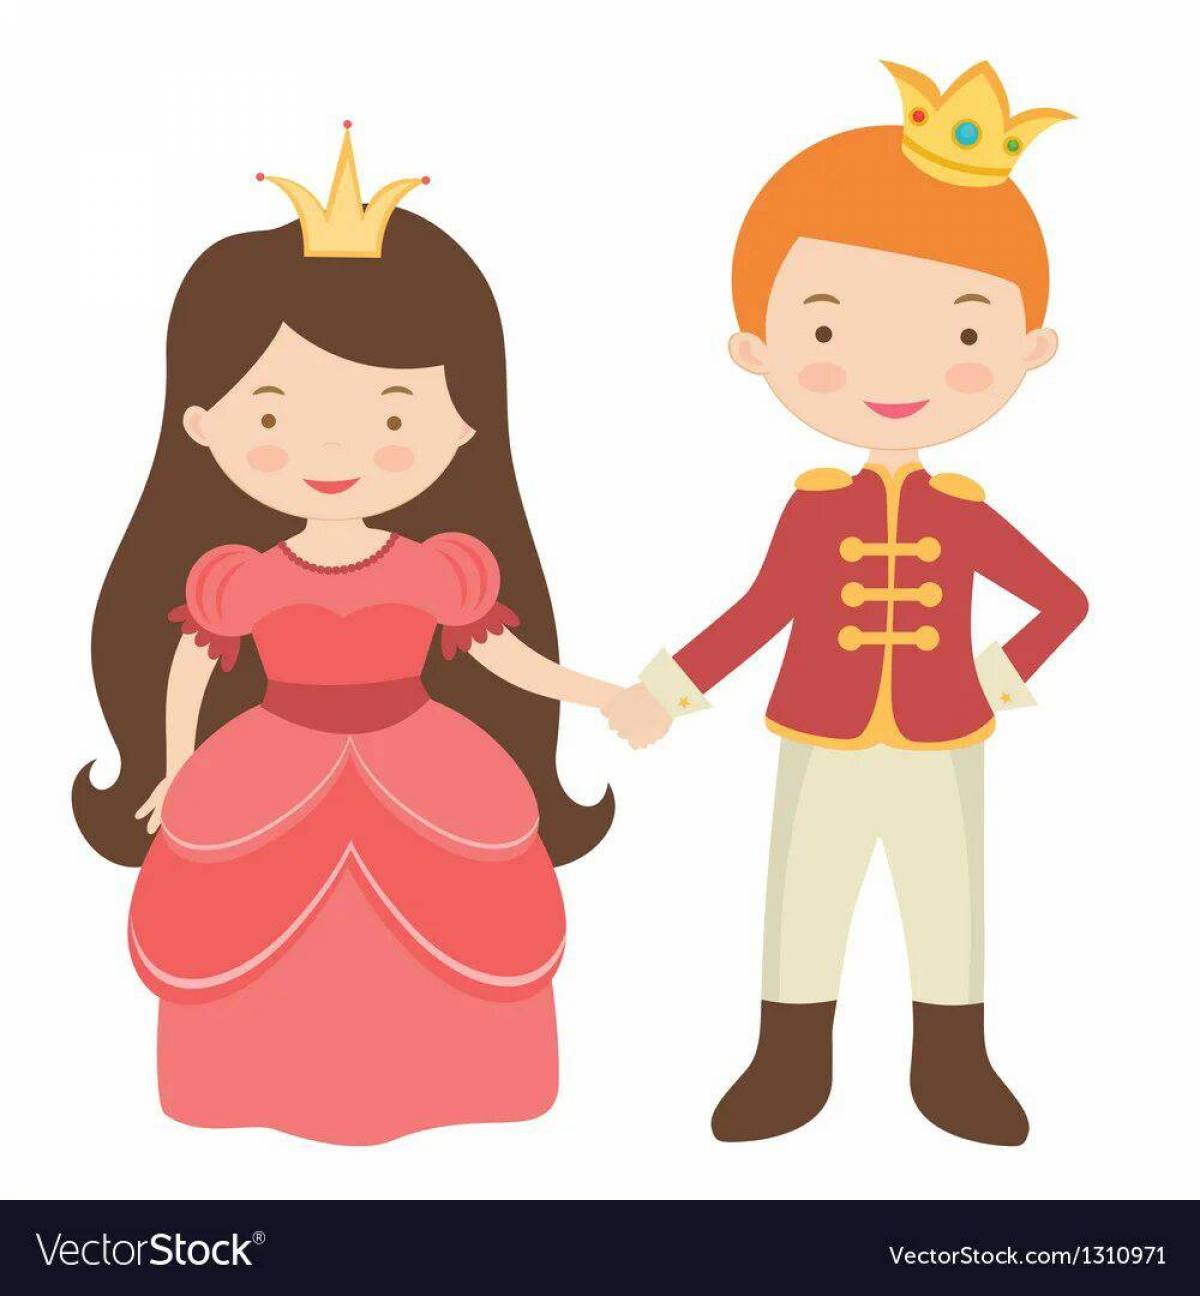 Принцесса и принц для детей #32